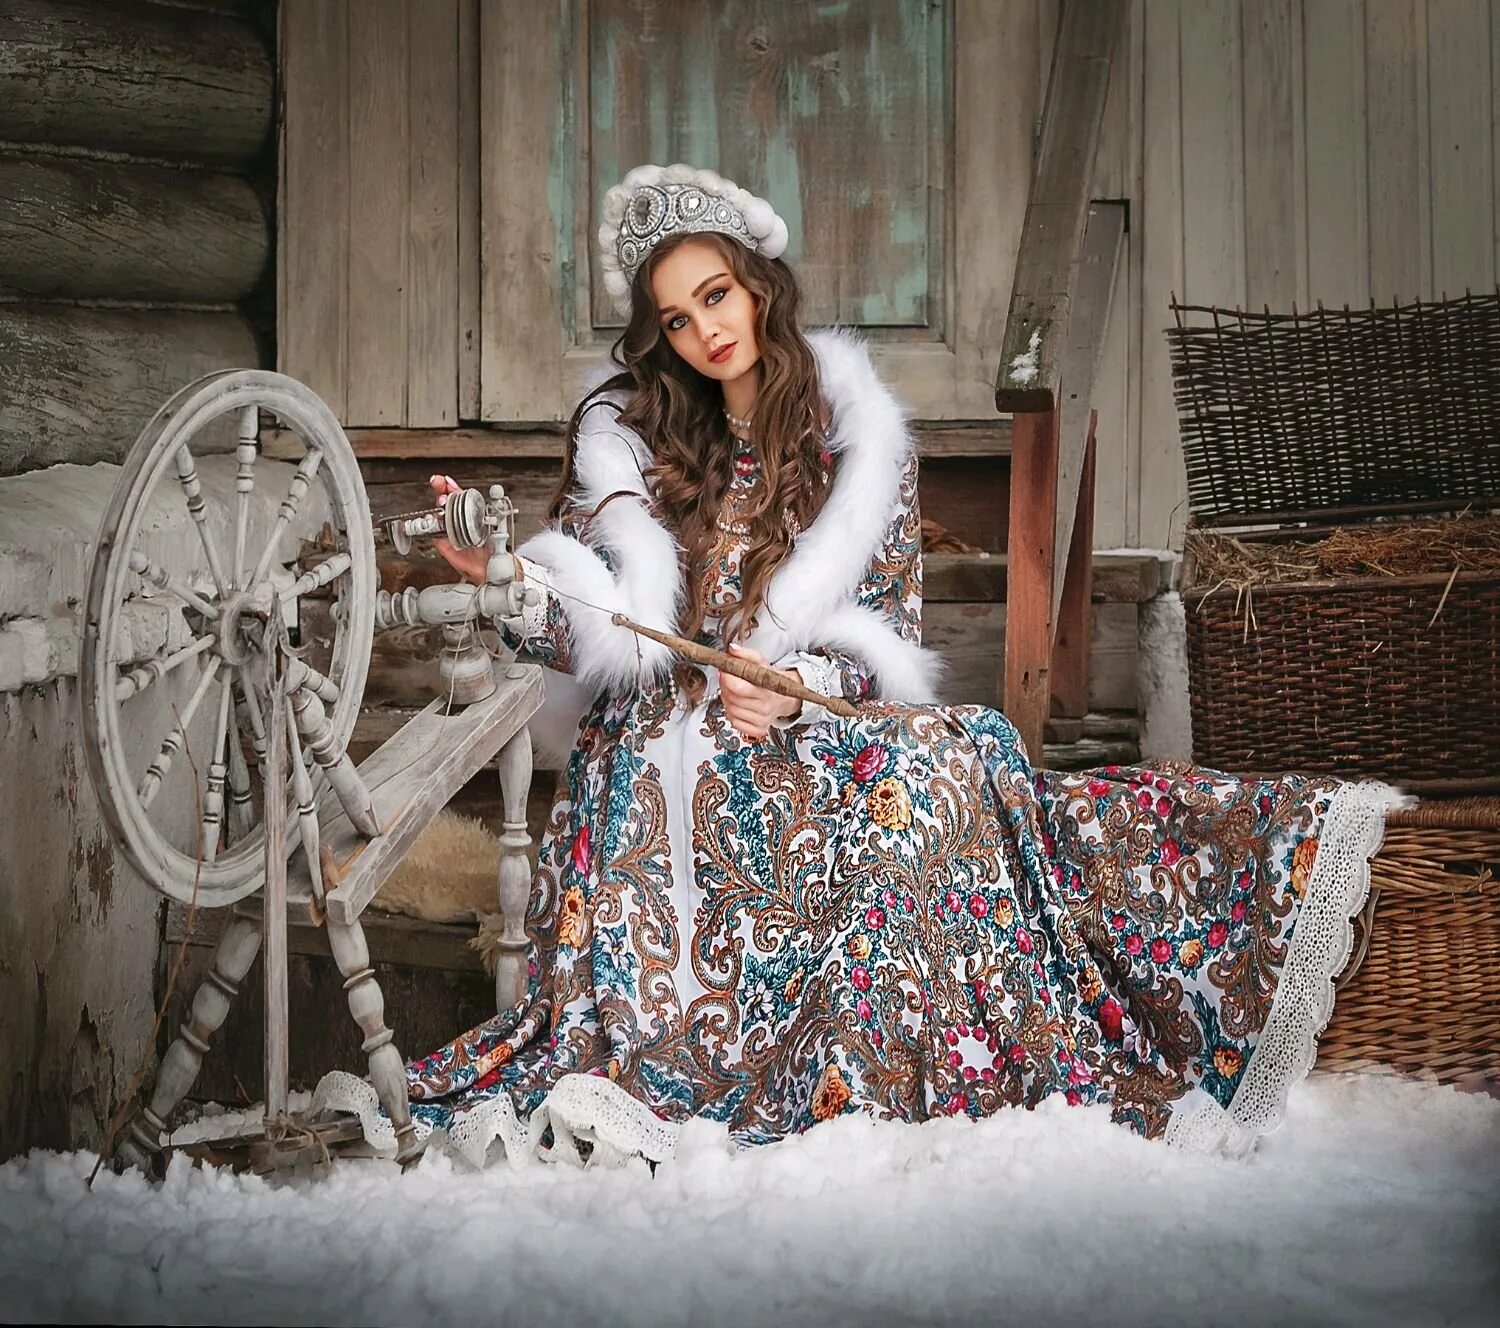 Зимняя фотосессия в русском стиле. Фотосессия в деревенском стиле зимой. Русский стиль в одежде. Фотосессия в русском народном стиле. Русский шае